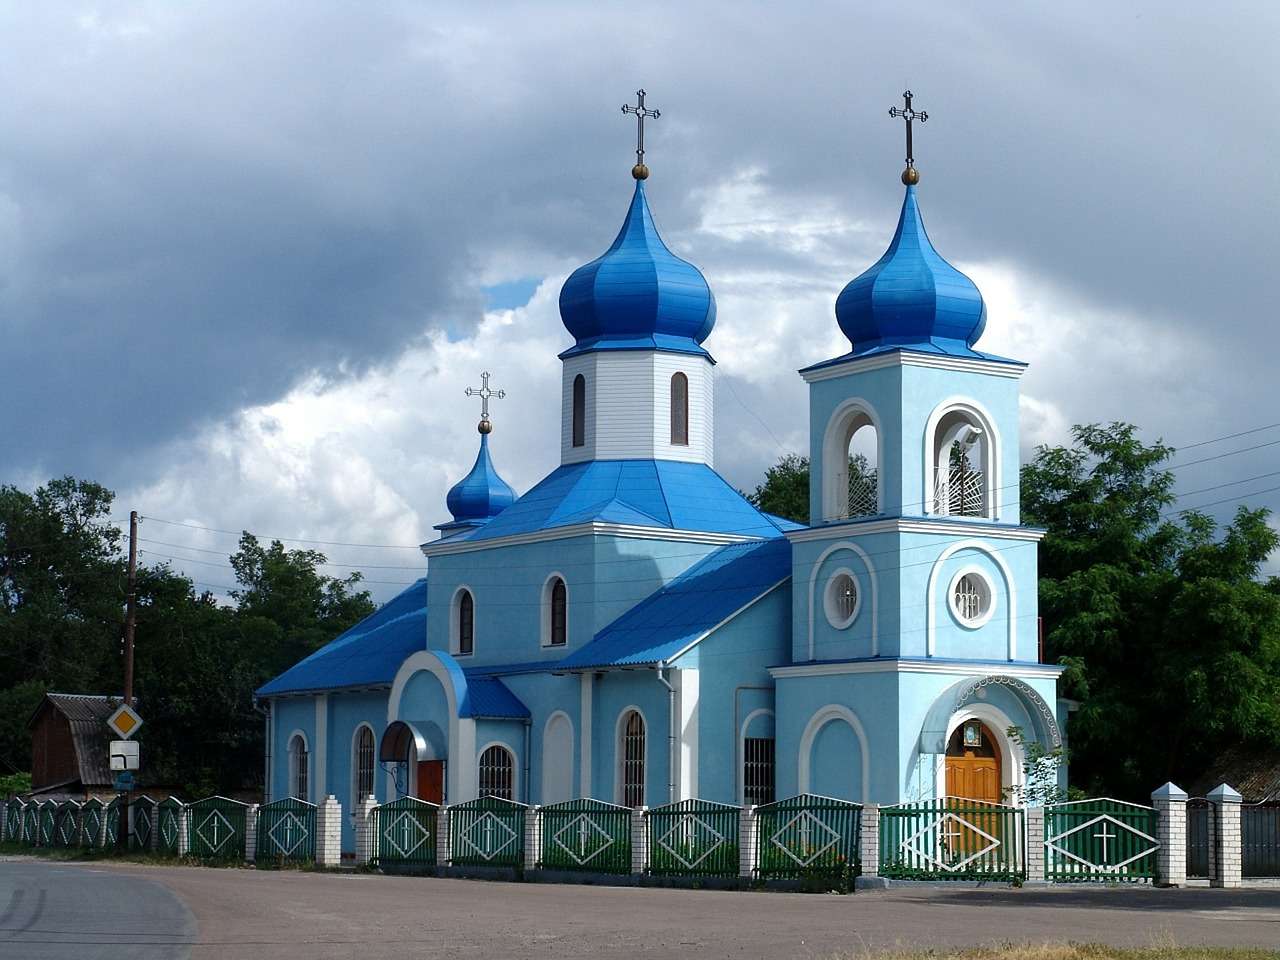 Kerkgebouw in Moldavië legpuzzel online